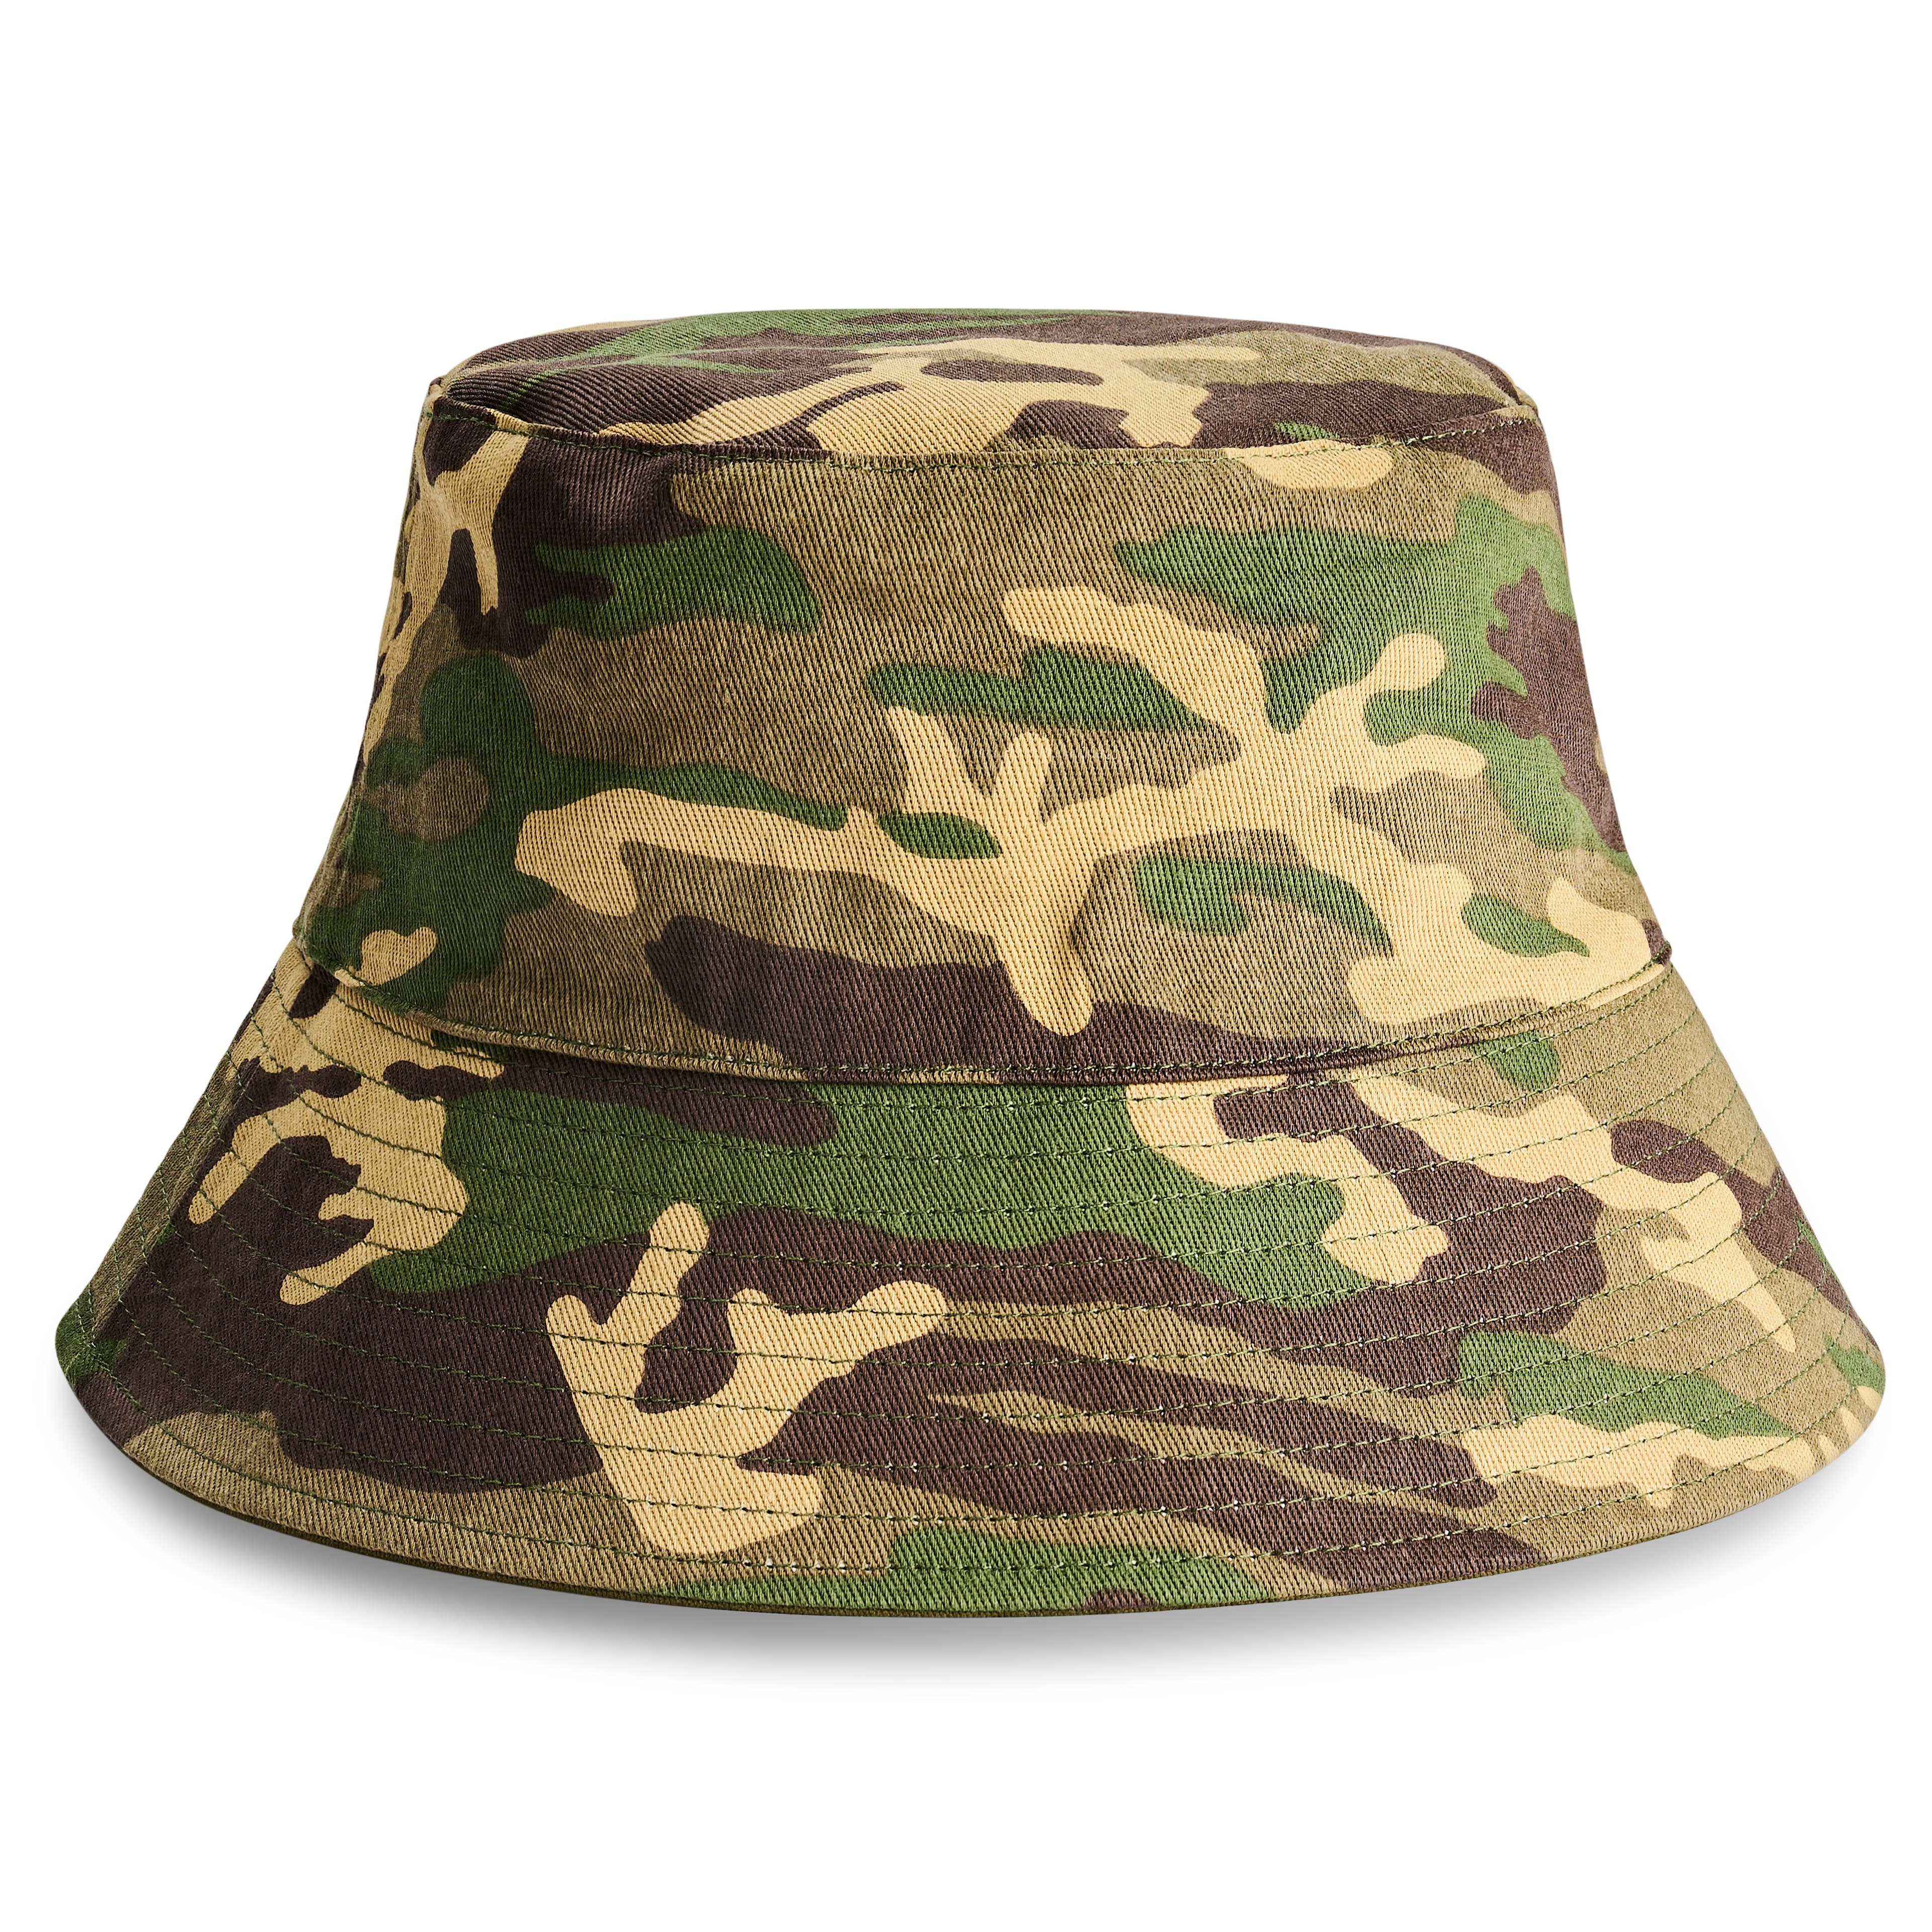 Lacuna | Obojstranný klobúk v štýle bucket vo vojenskej zelenej a maskovacej farbe